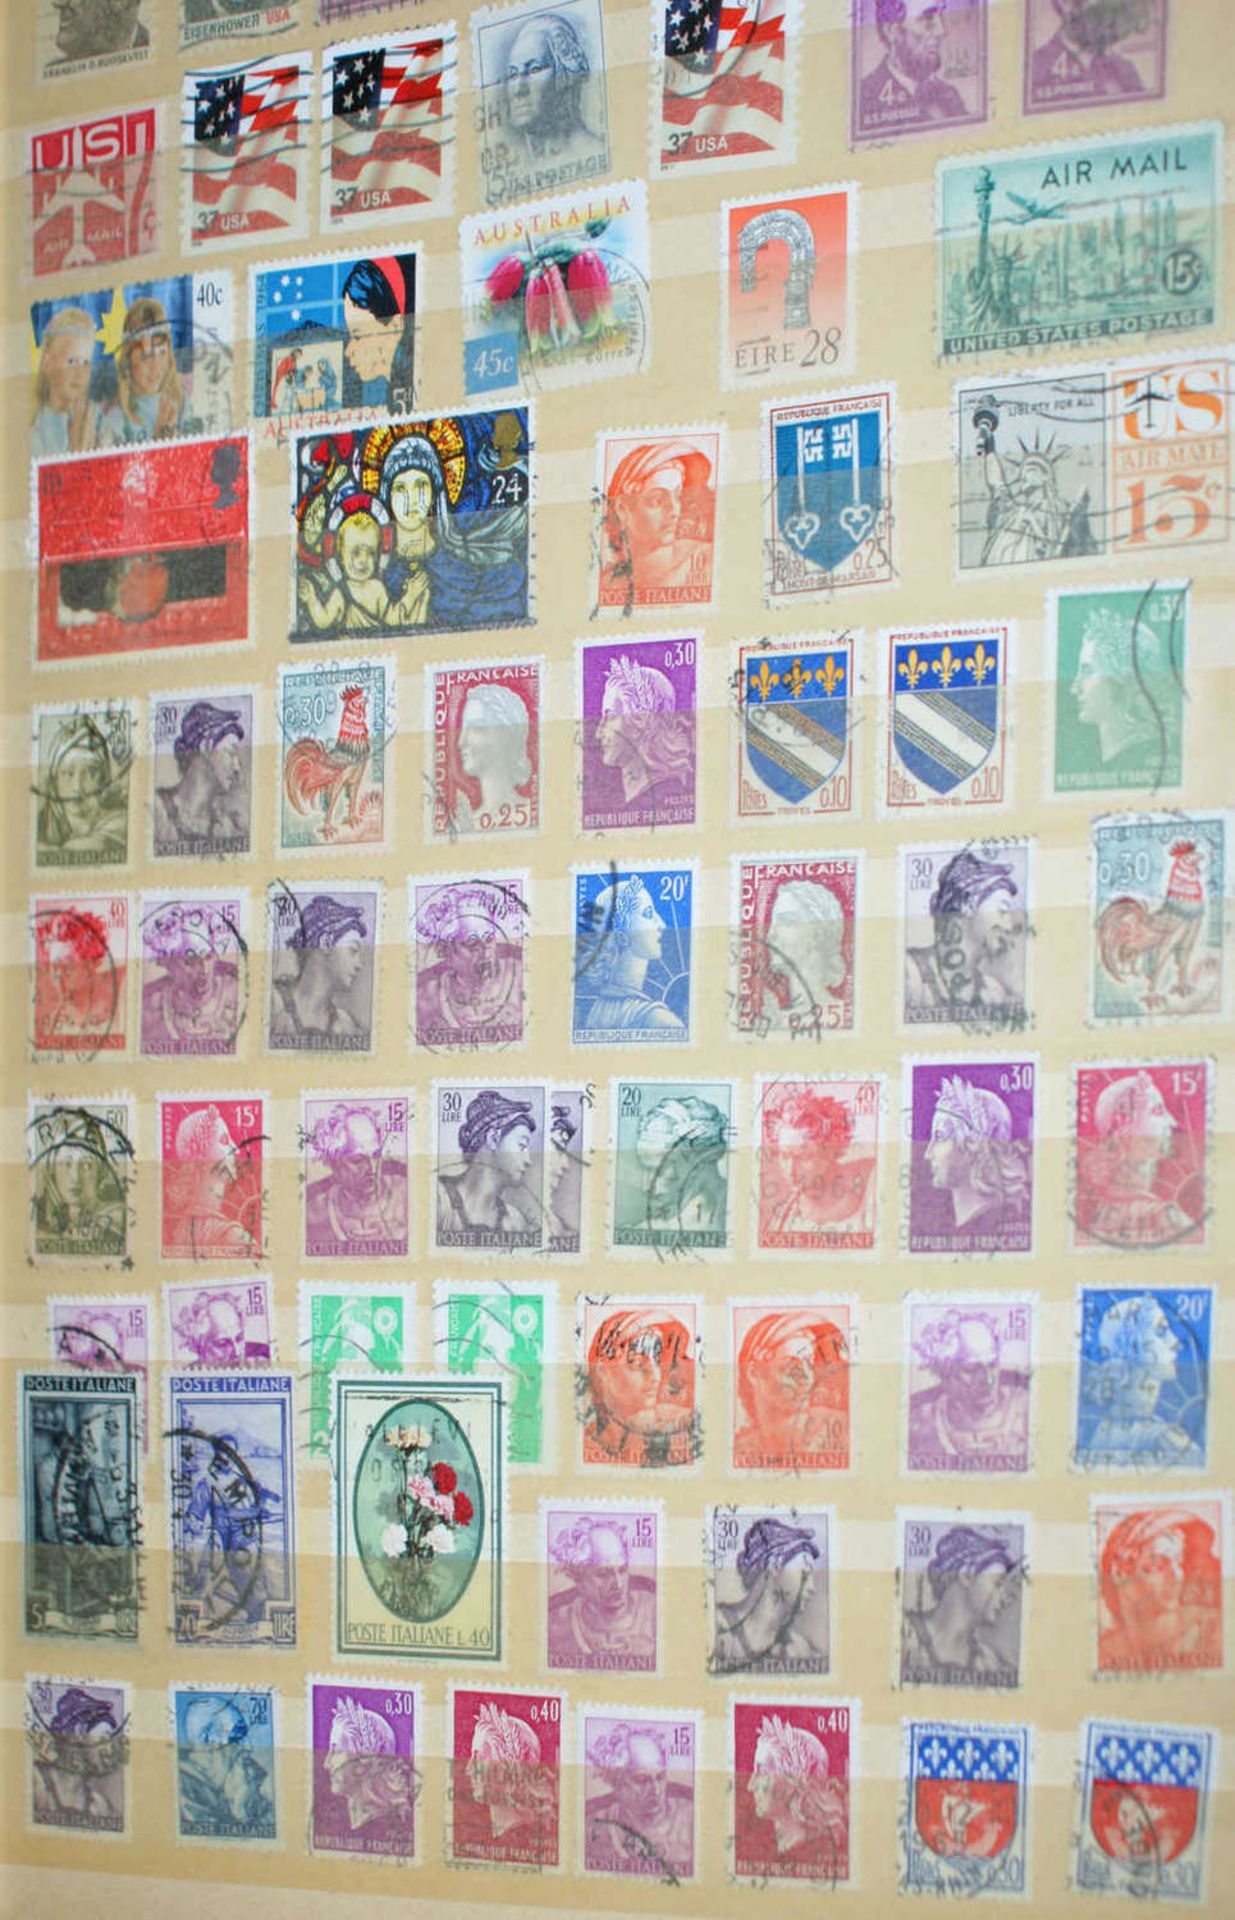 Europa - Briefmarken Dubletten Konvolut, bestehend aus 16 Alben, teilweise schlecht gelagert. - Bild 7 aus 8